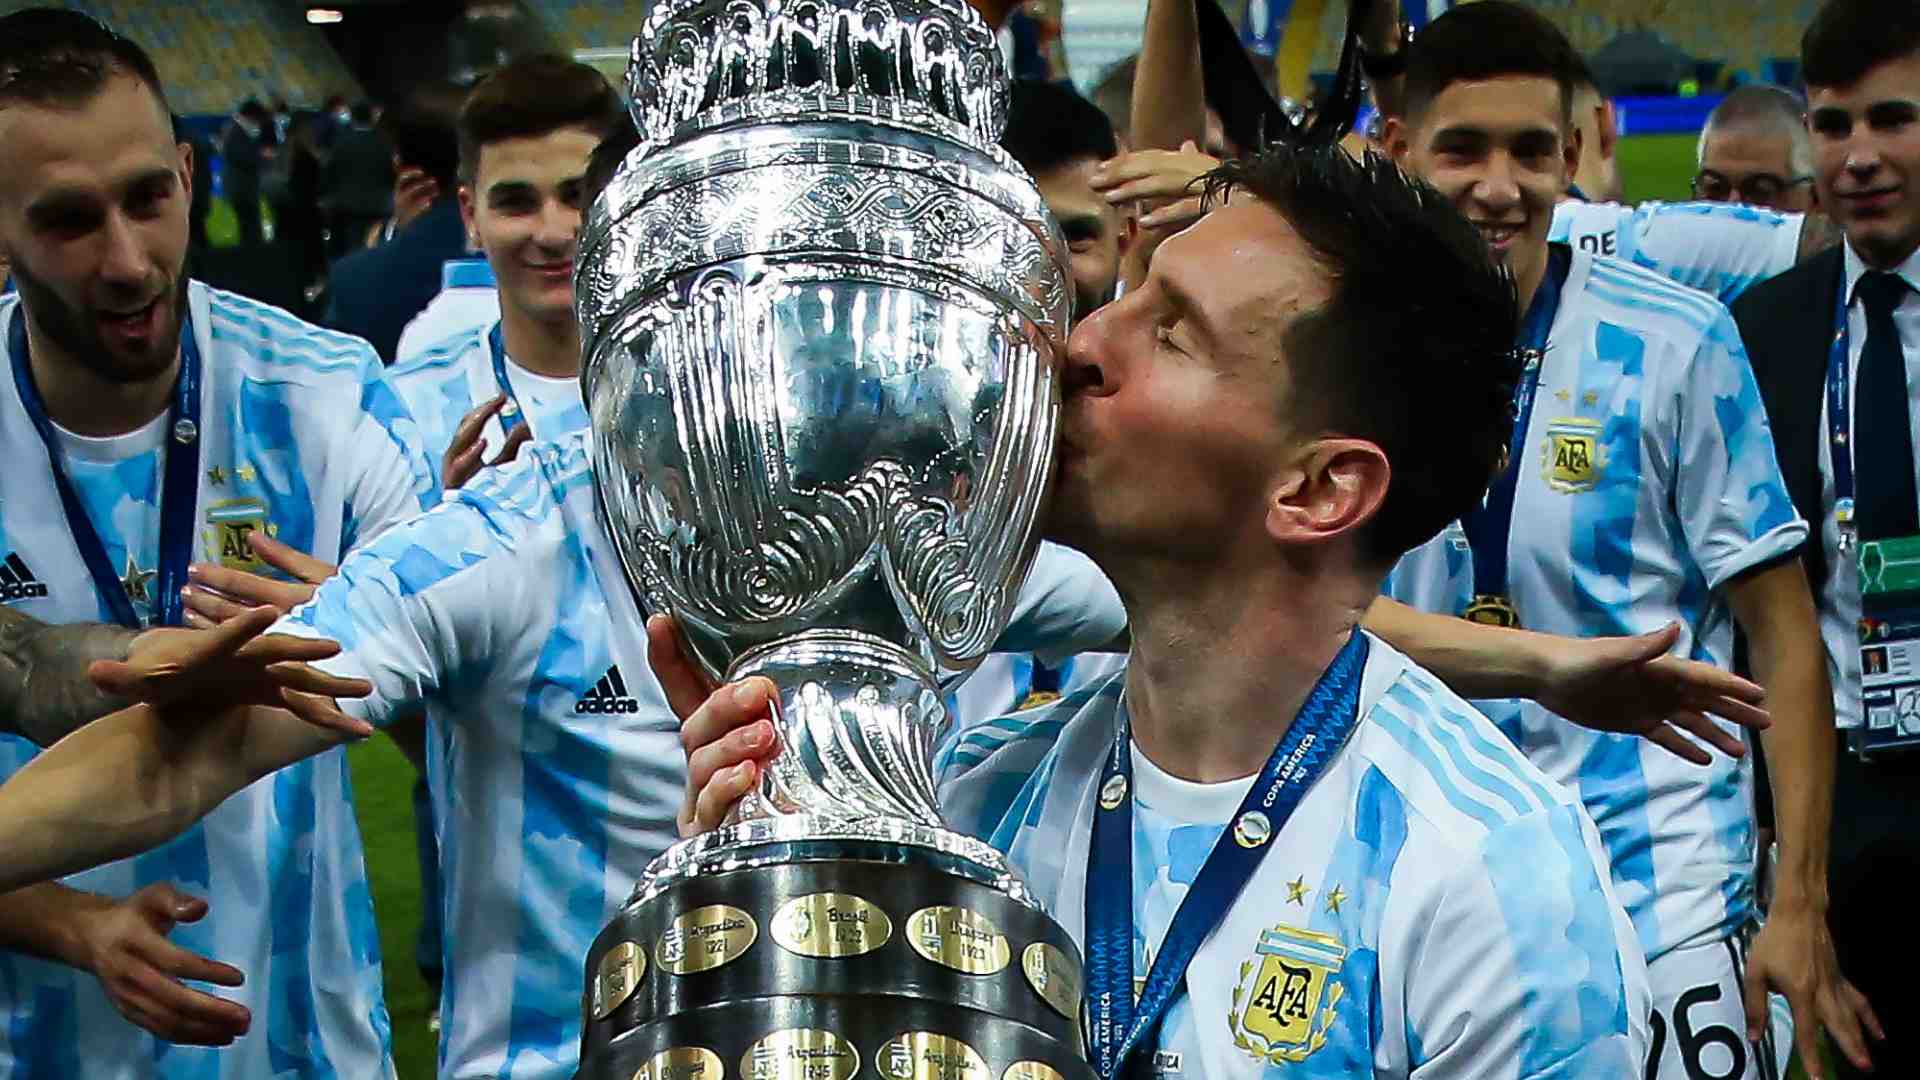 Argentina Copa America: Bạn là fan cuồng của đội tuyển Argentina và cúp Copa America? Hấp dẫn hình ảnh mới nhất của đội tuyển Argentina khi giành cúp vô địch Copa America sẽ khiến bạn phấn khích! Xem Messi và đồng đội đăng quang một cách hoành tráng và với niềm tự hào không thể tả được.